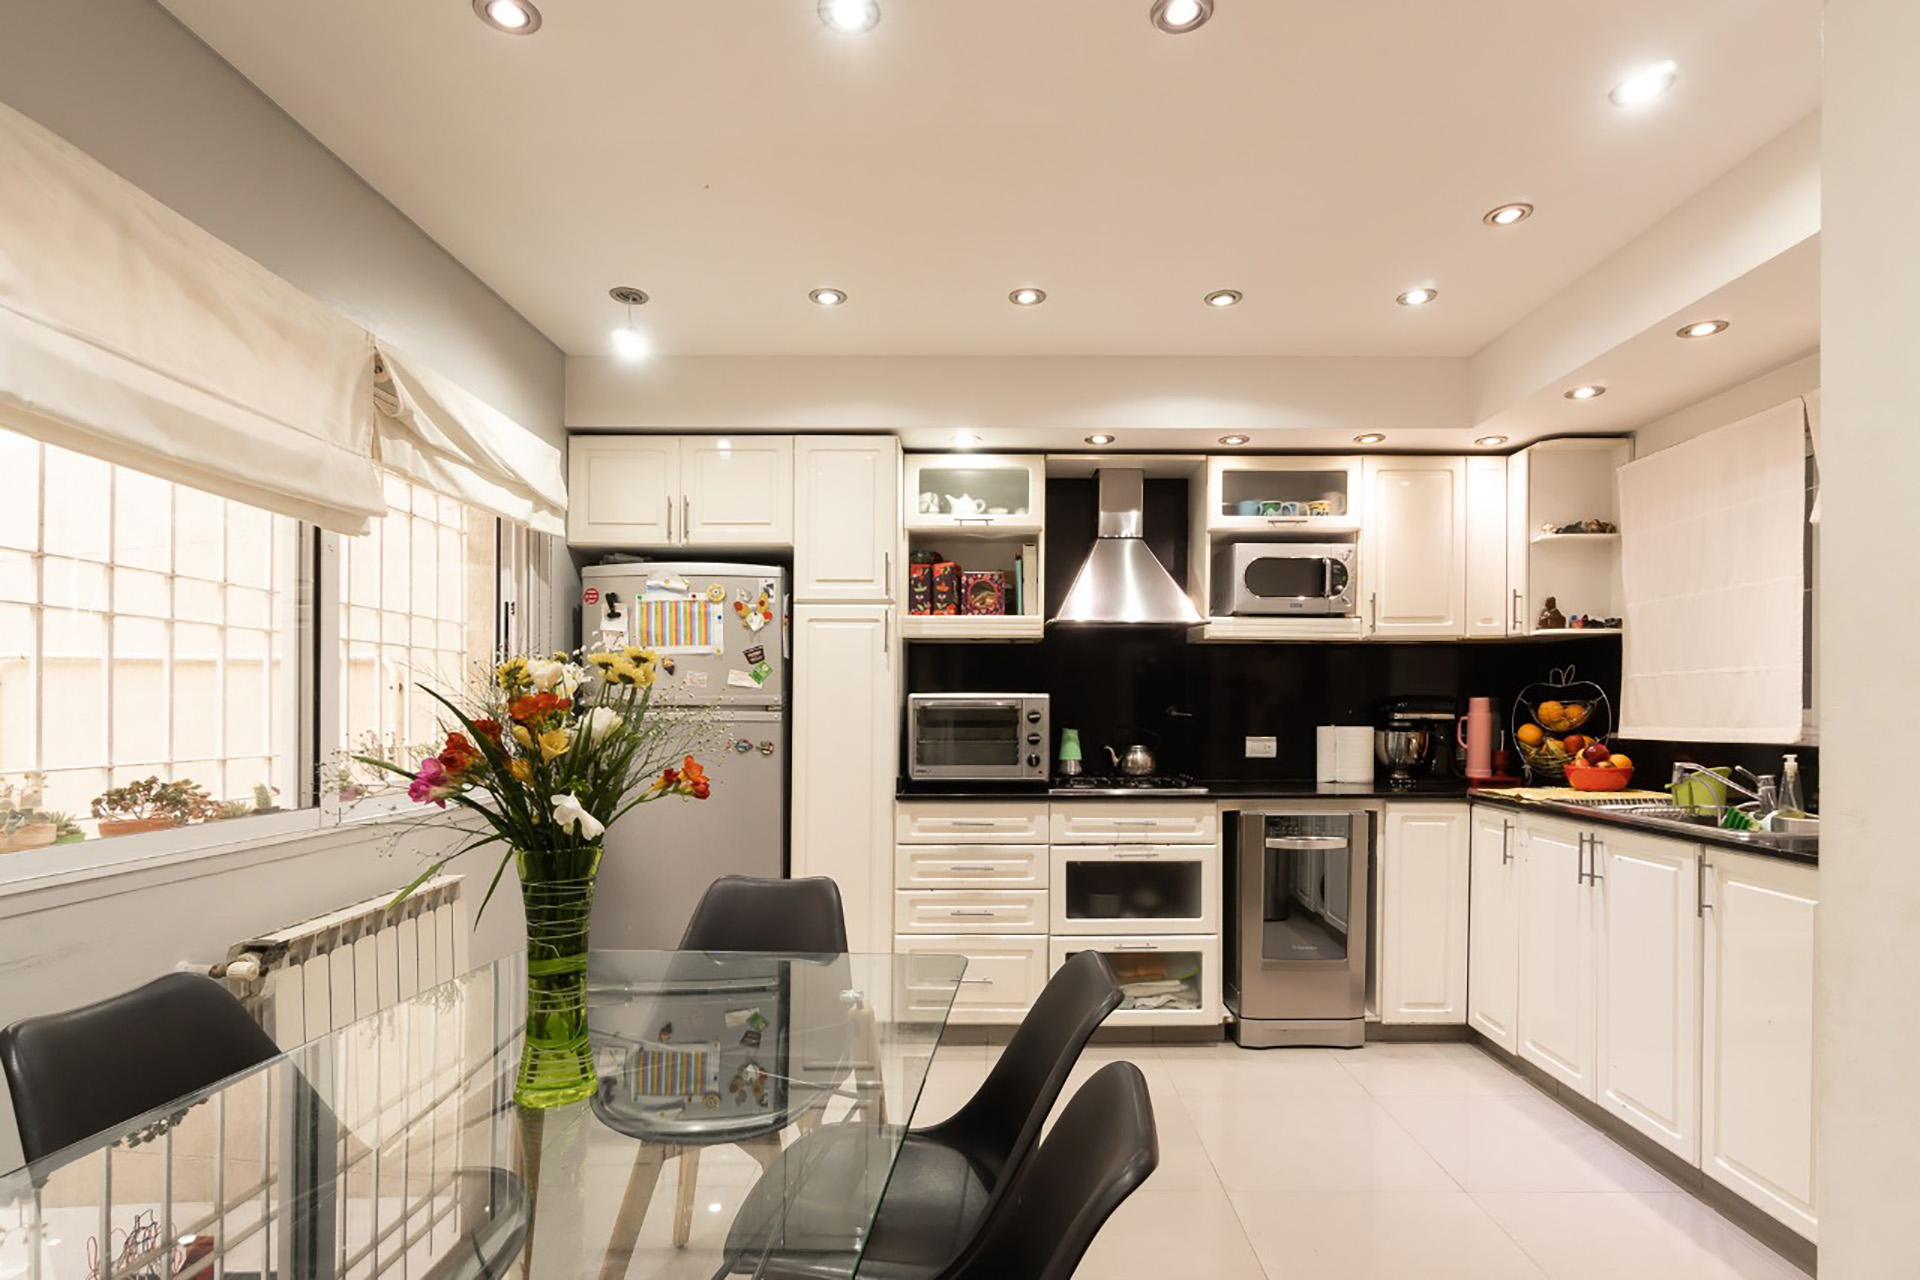 La cocina luce con muebles nuevos y gran espacio de guardado